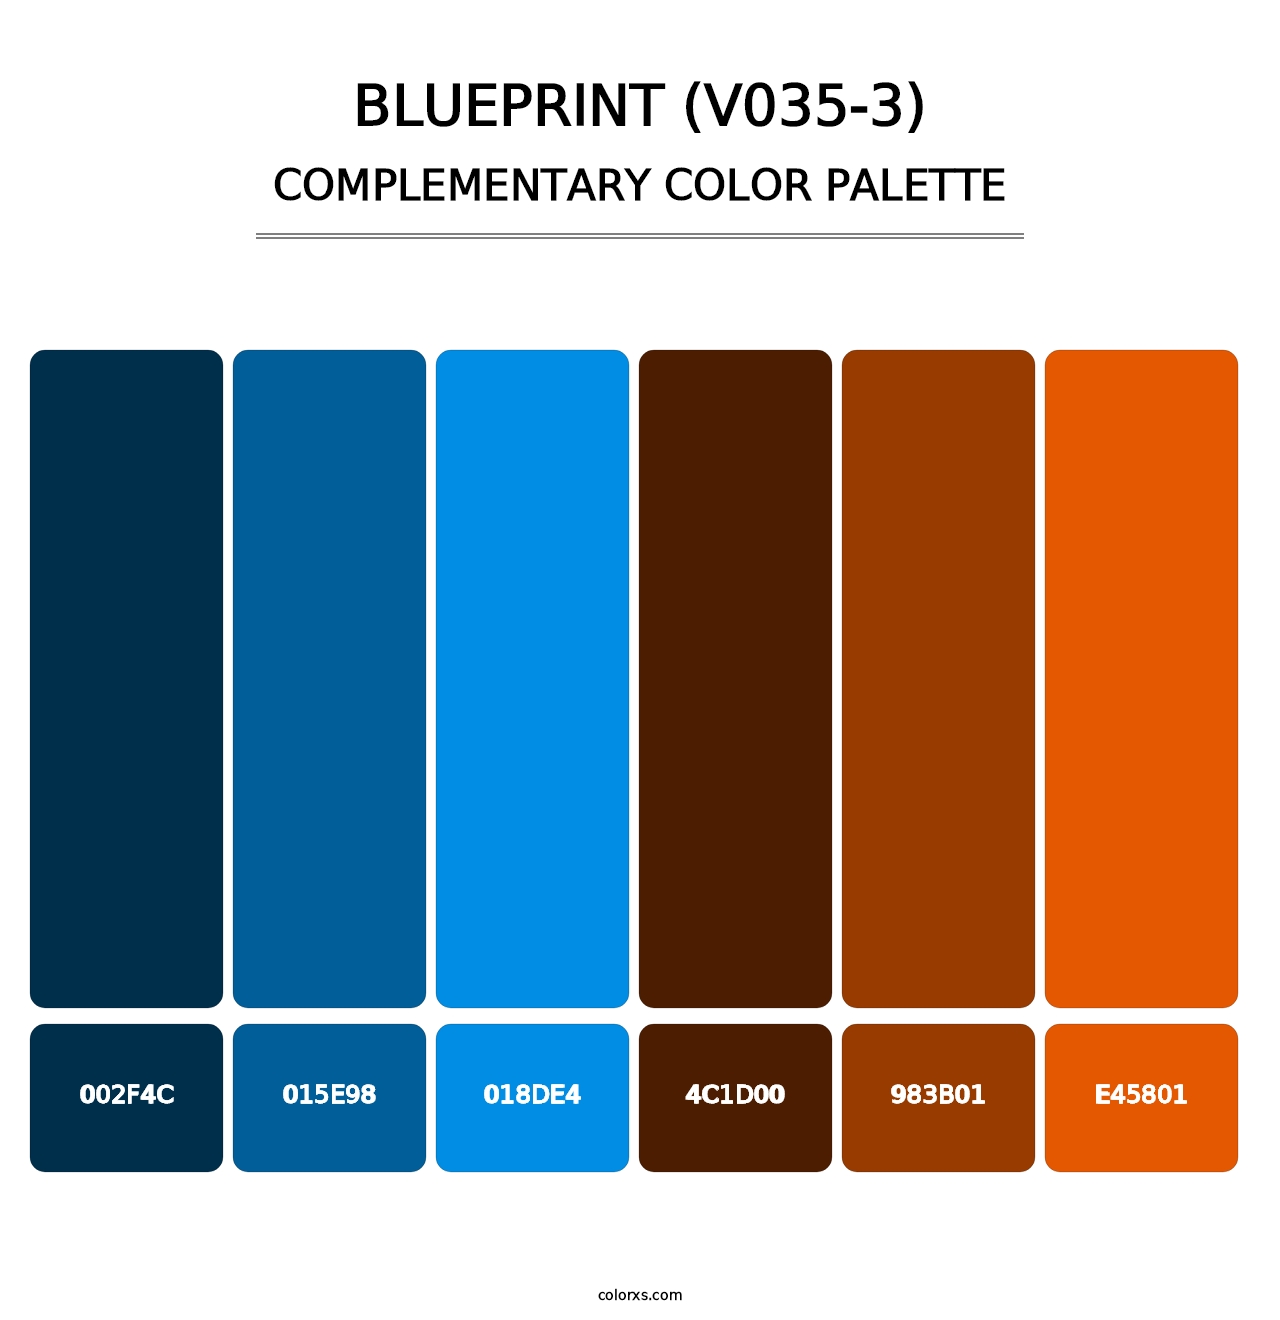 Blueprint (V035-3) - Complementary Color Palette